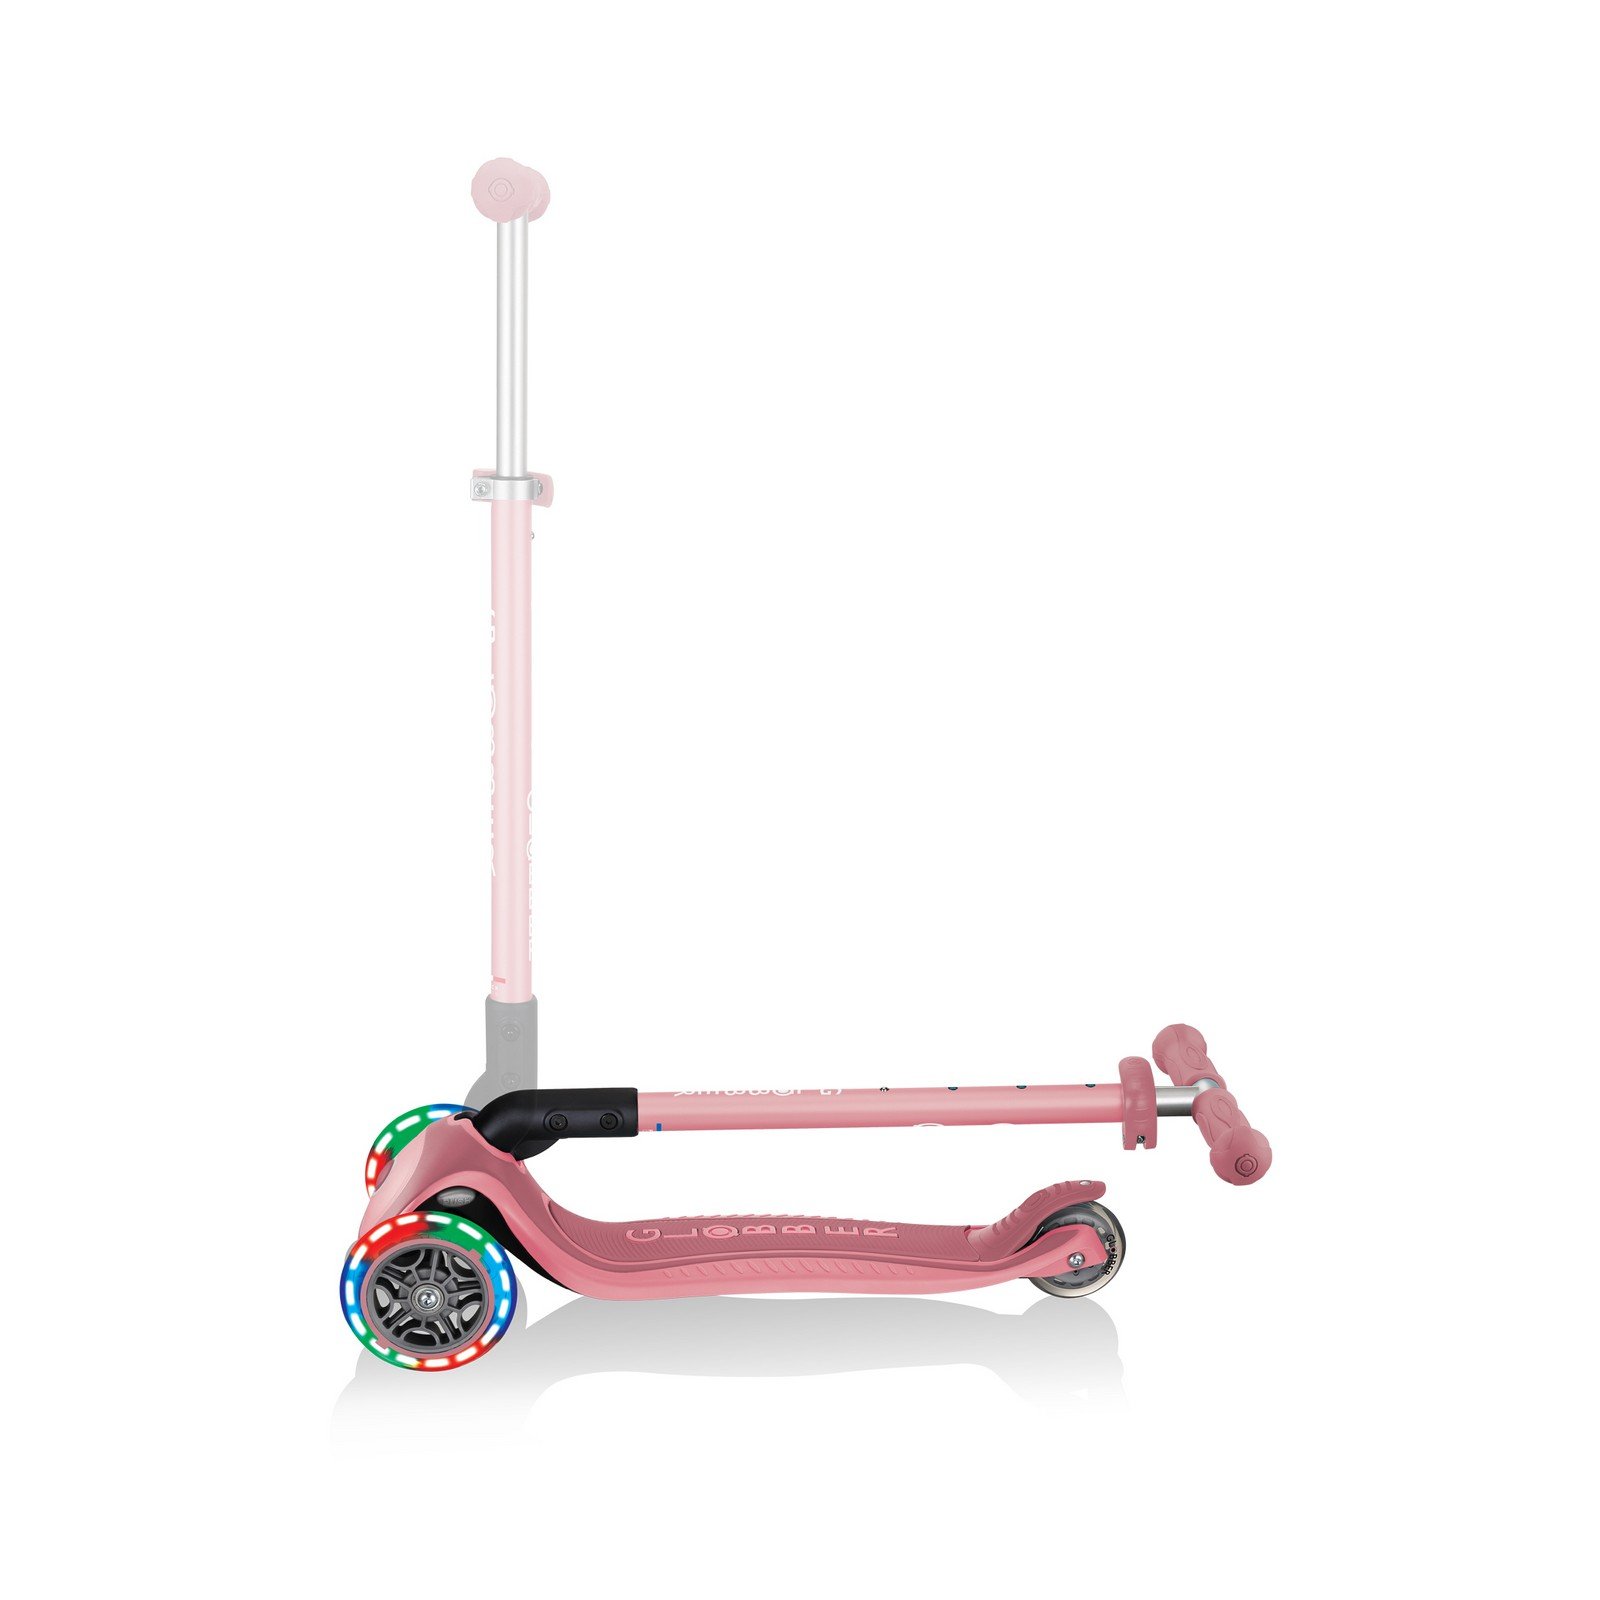 Самокат Globber Primo foldable plus lights, колеса с подсветкой, пастельно-розовый (439-210) - фото 7